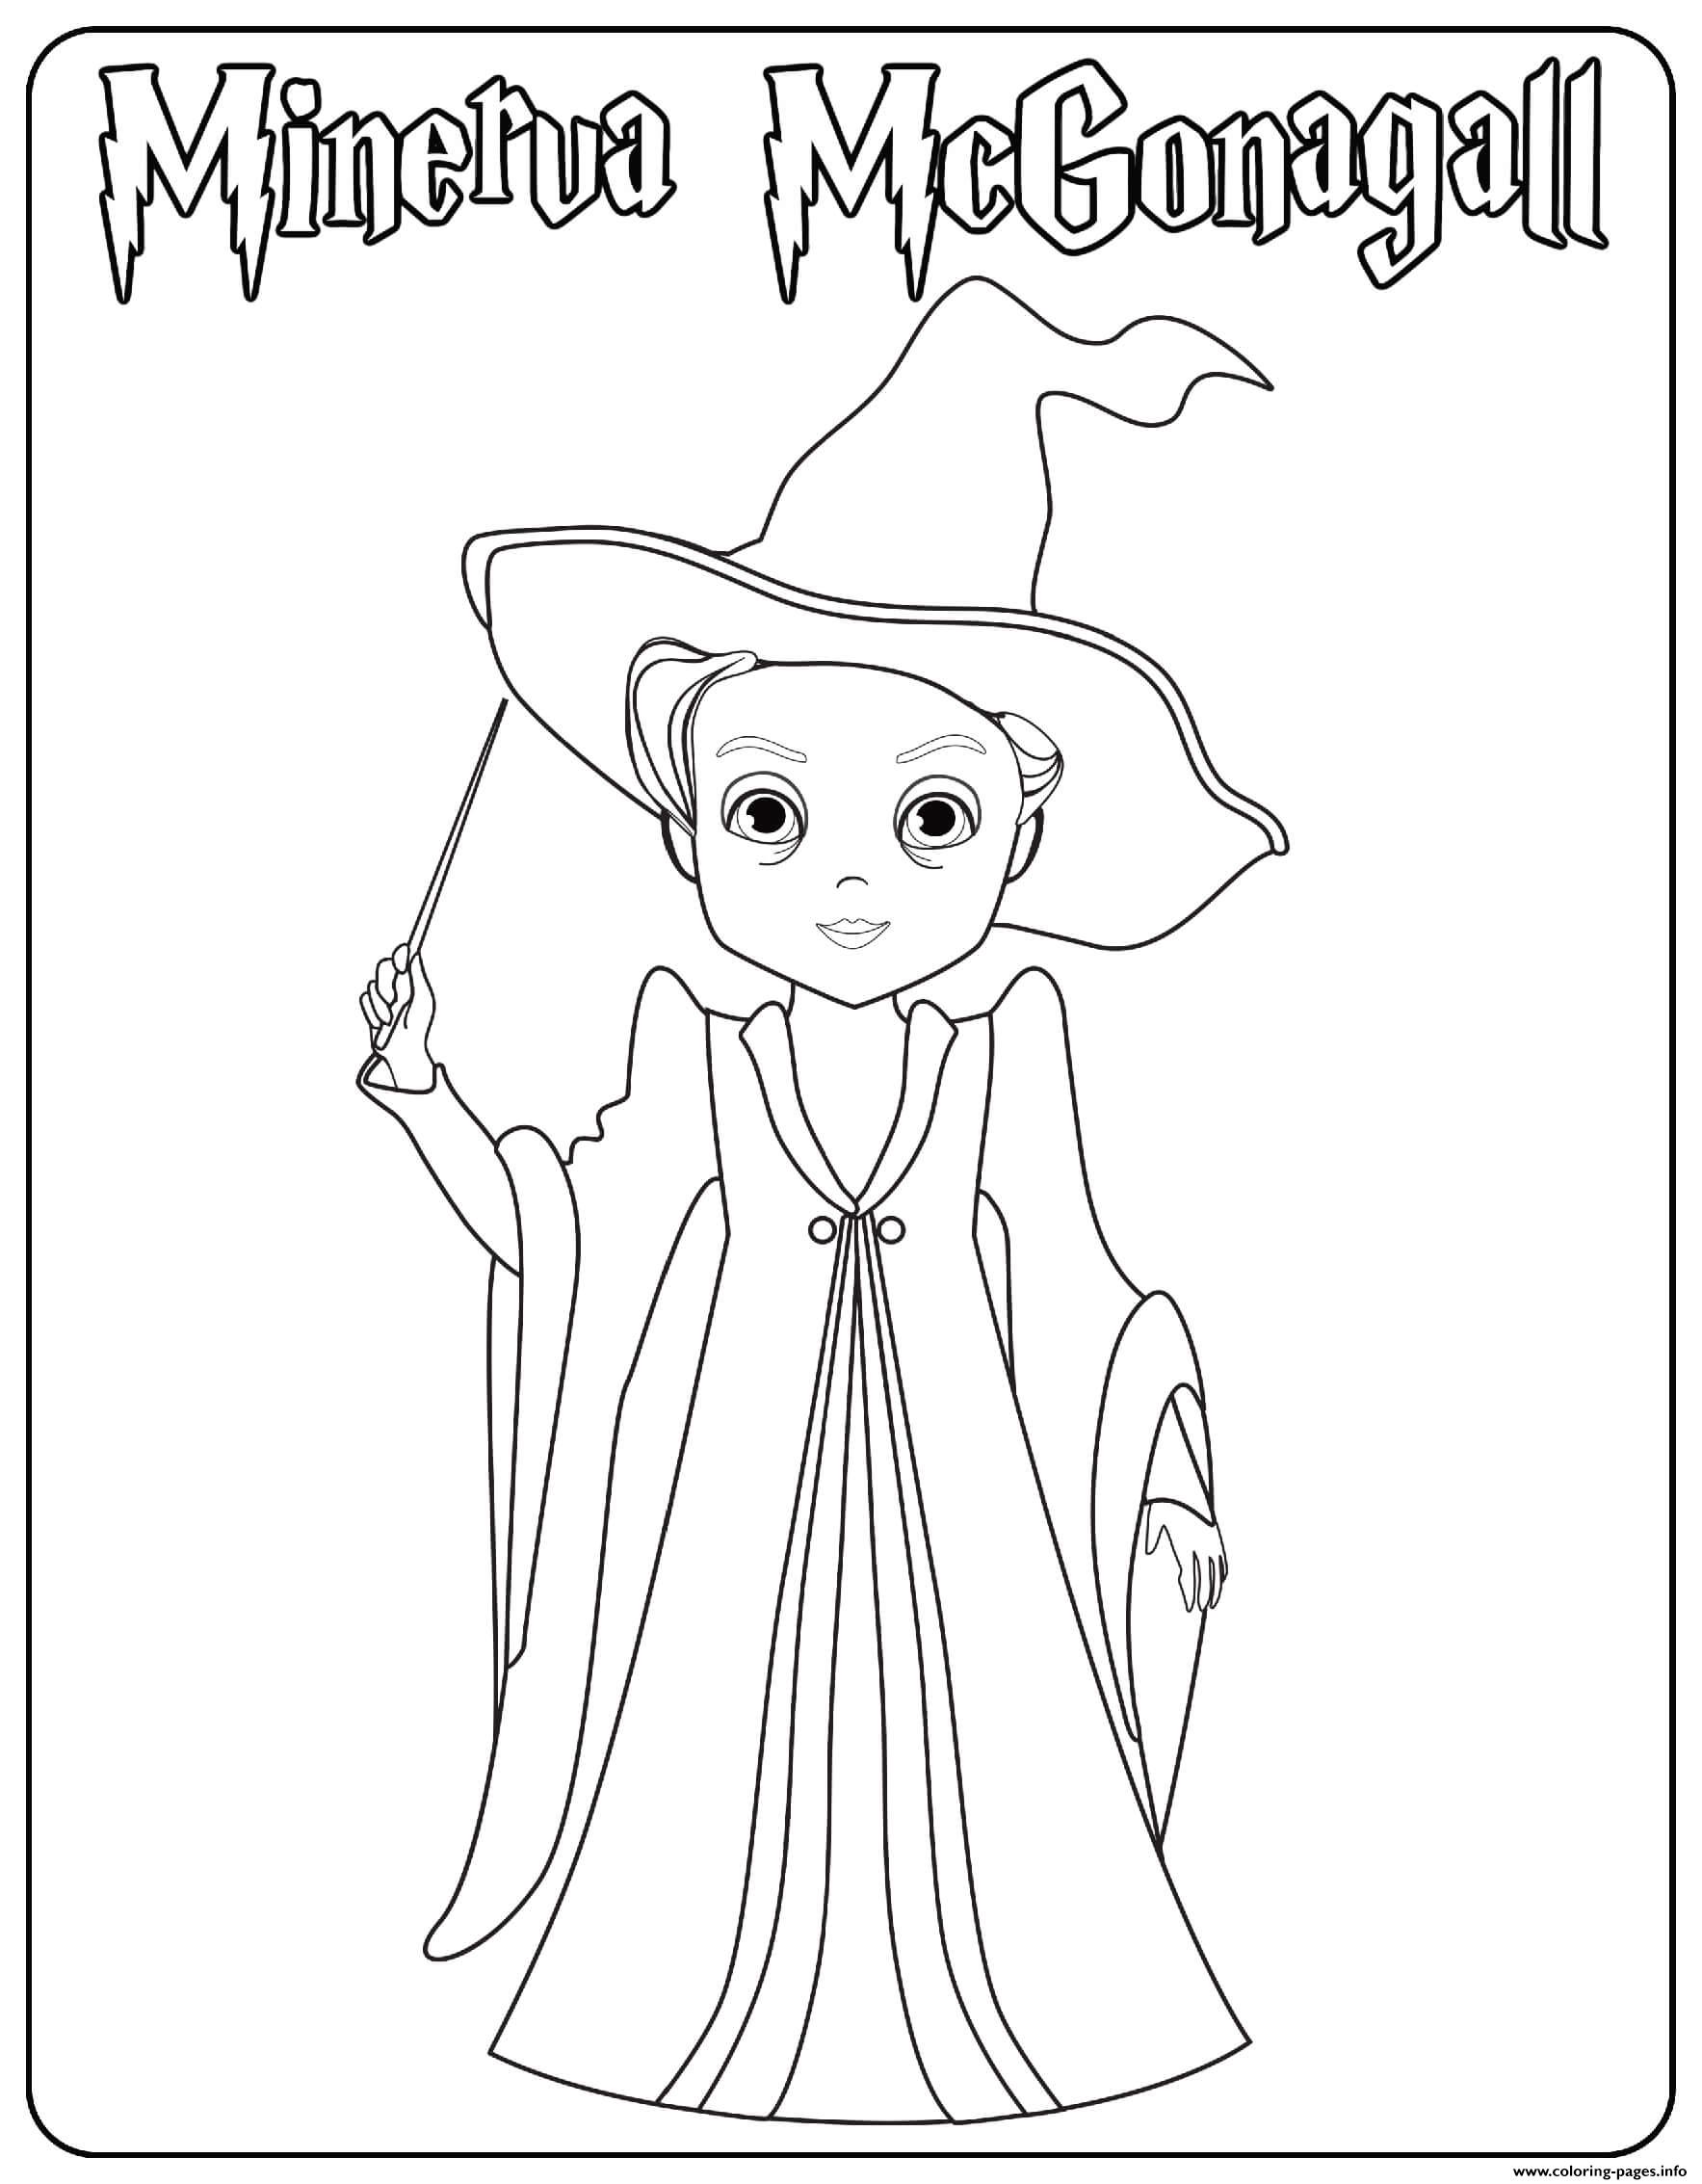 Minerva McGonagall coloring